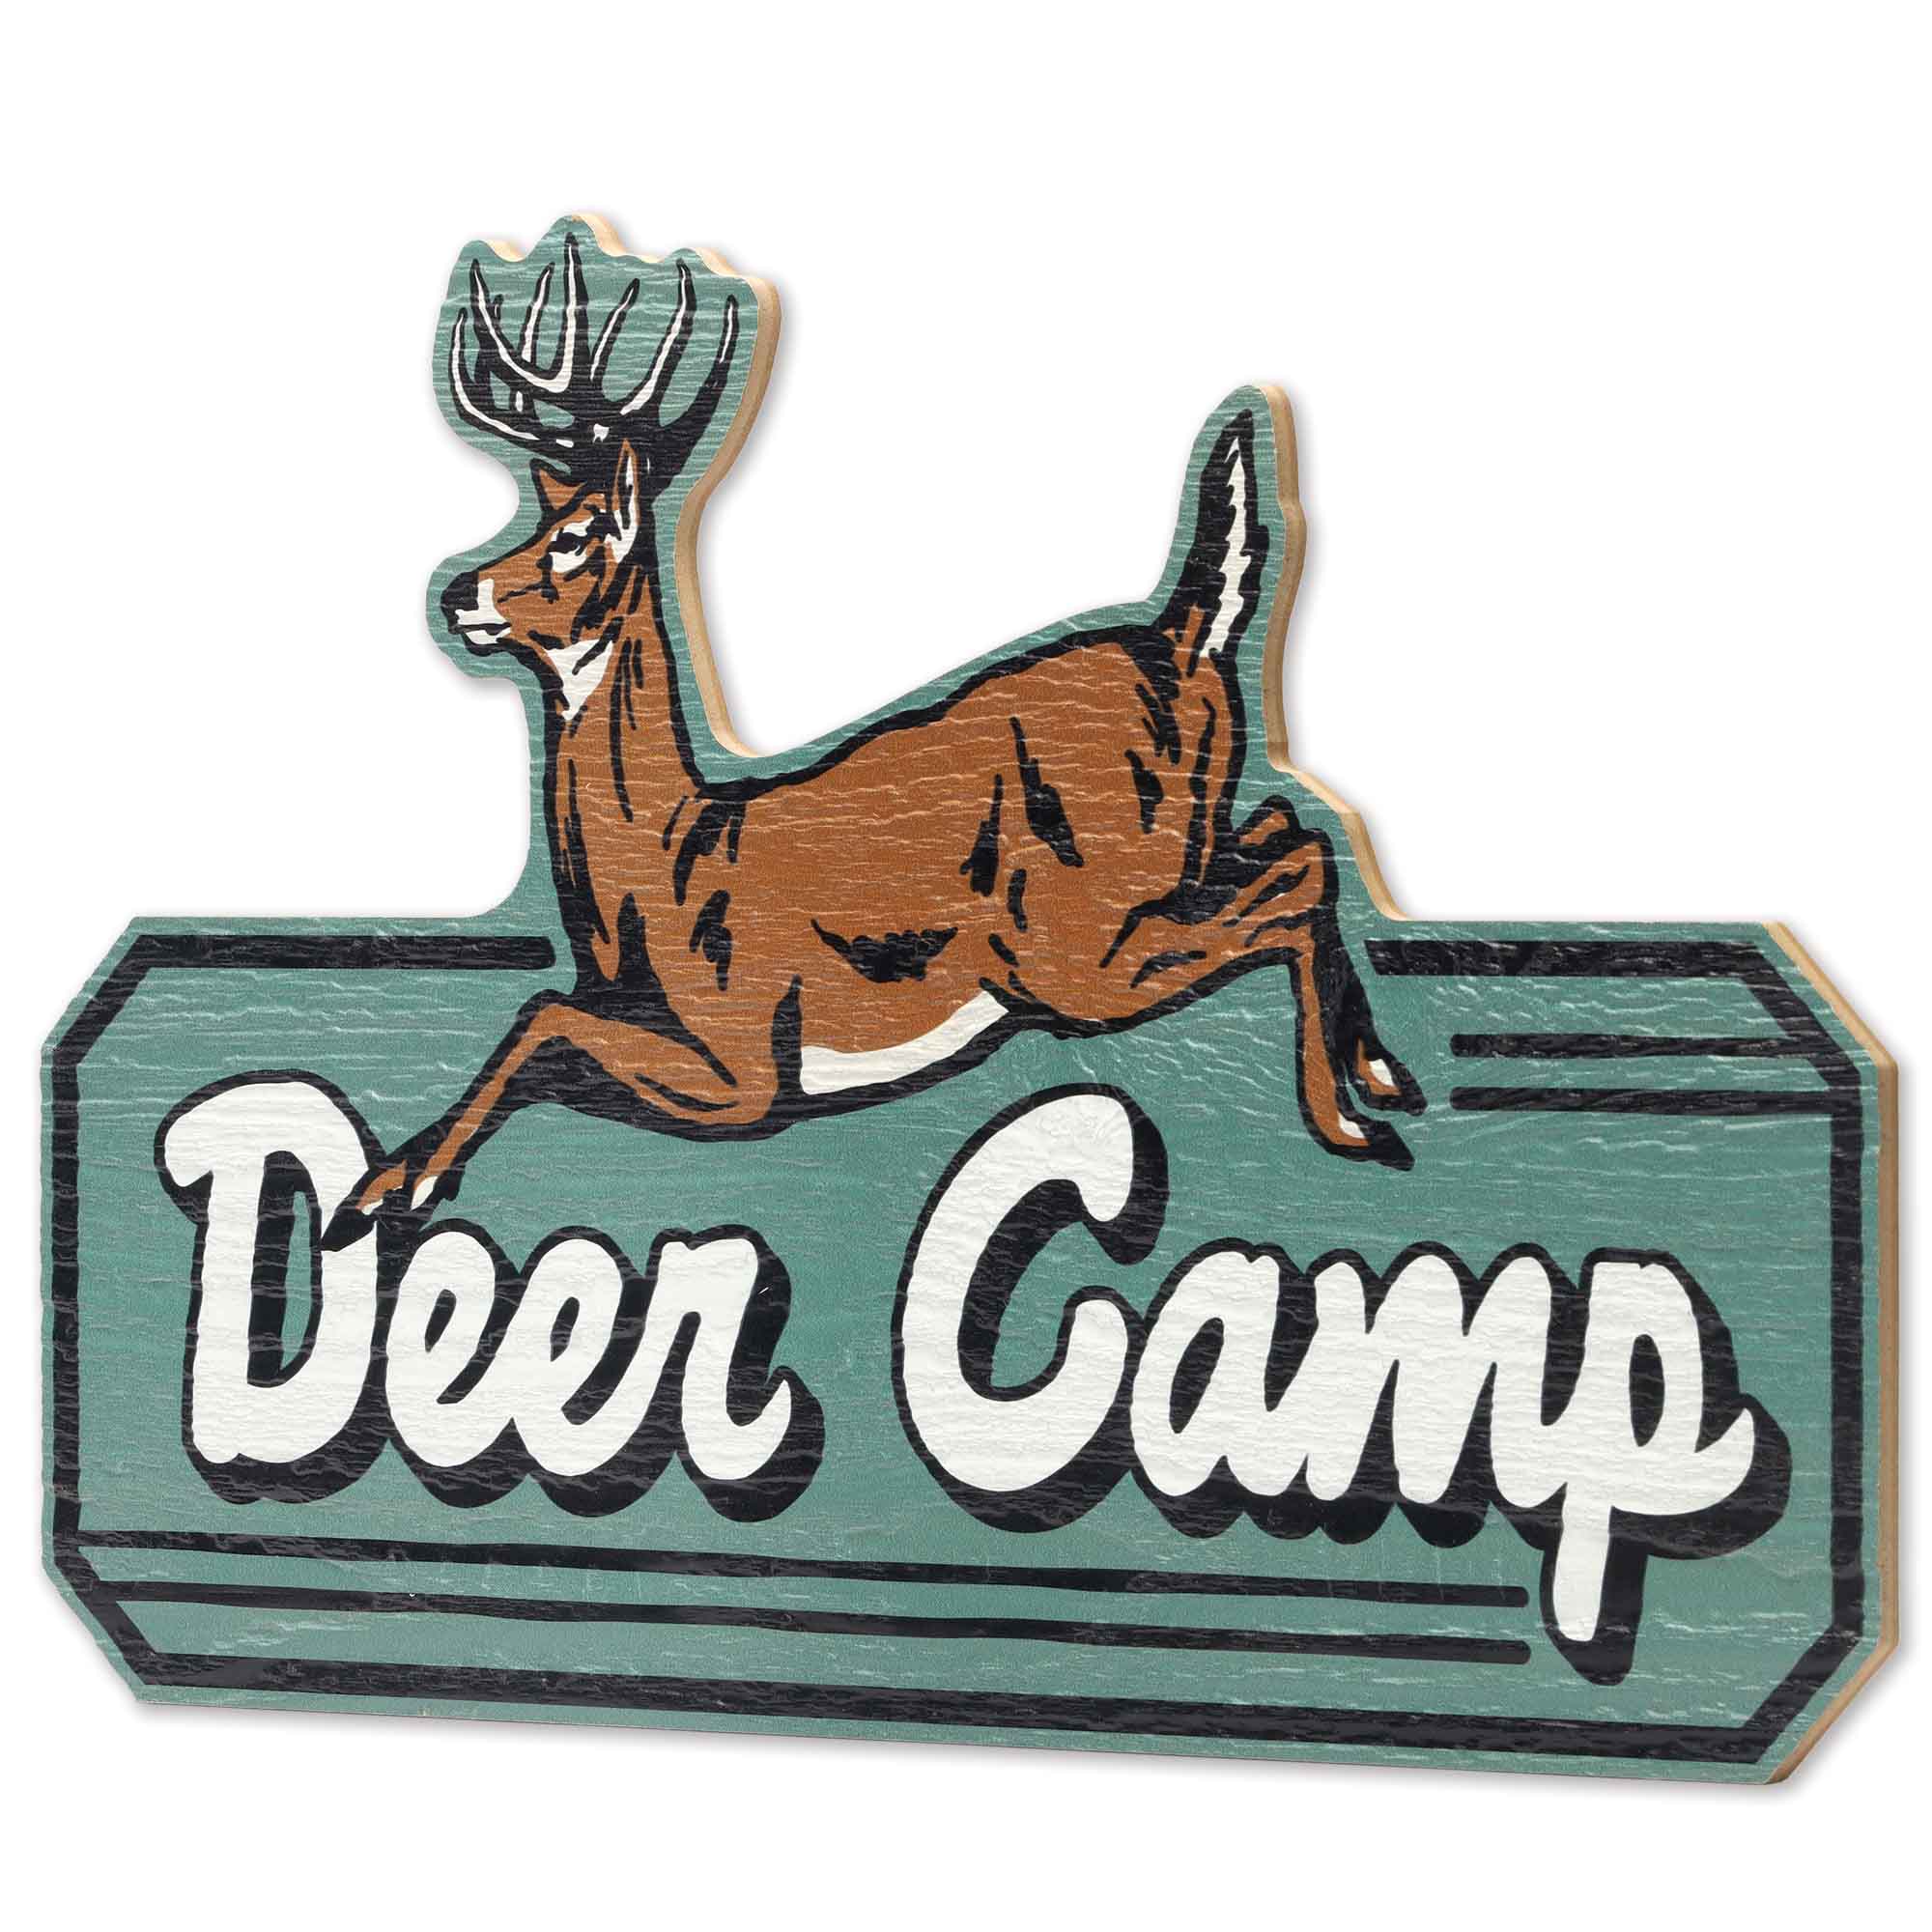 Open Road's Deer Camp Wooden Sign